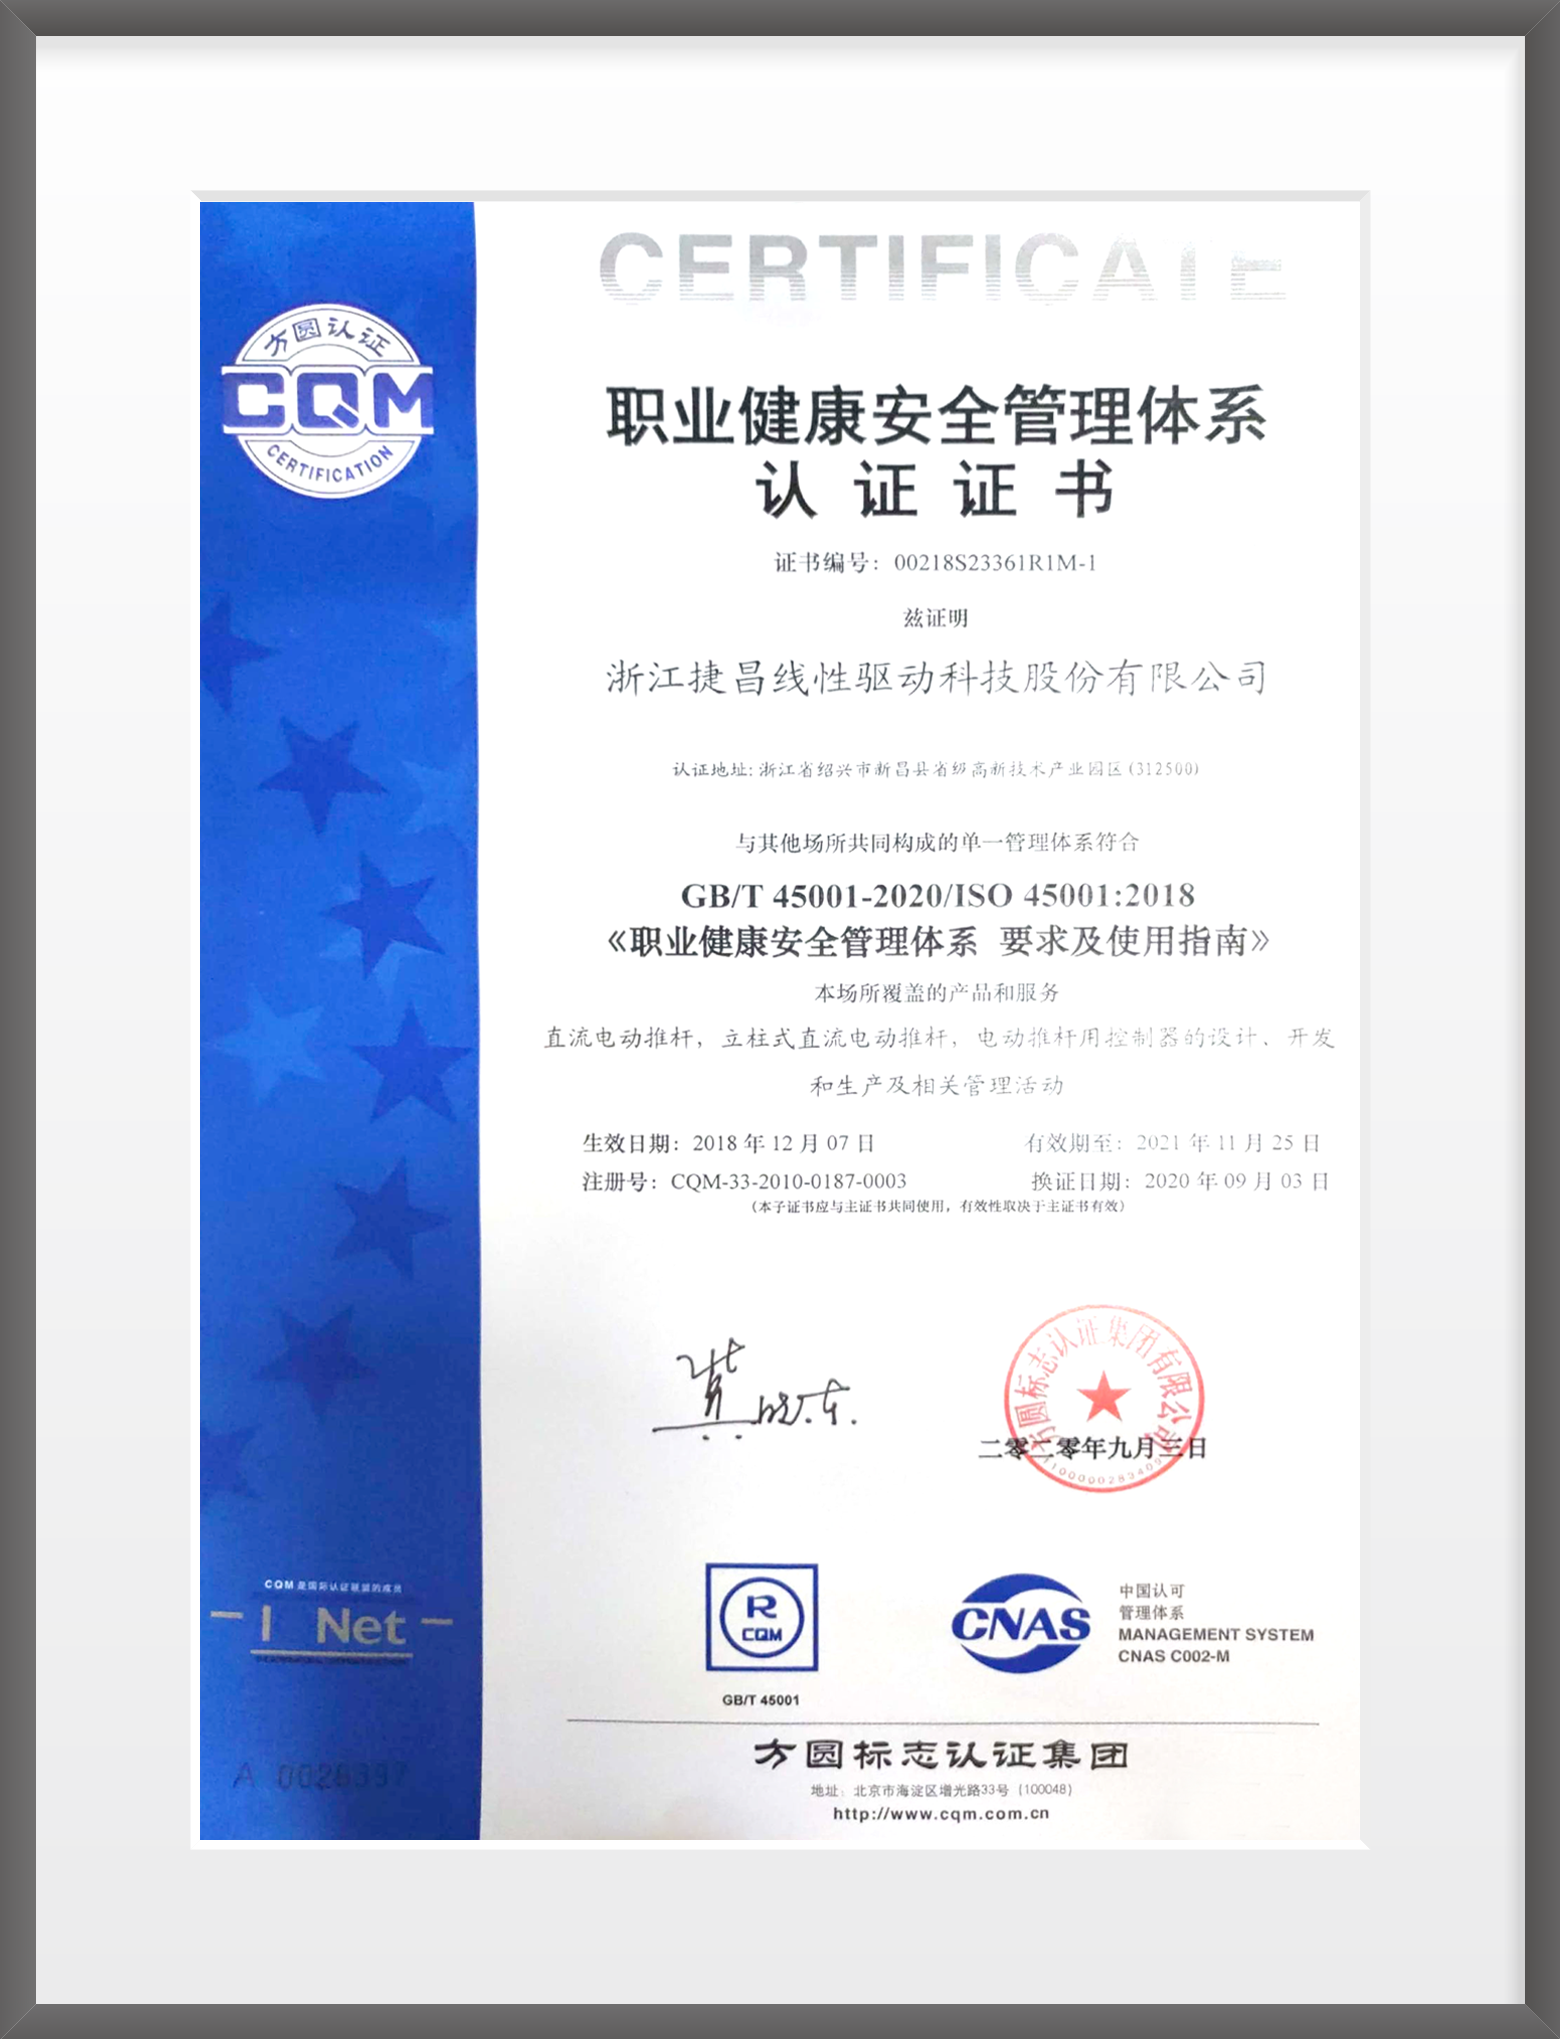 ISO45001 Chinese version of certificate-Heshikai